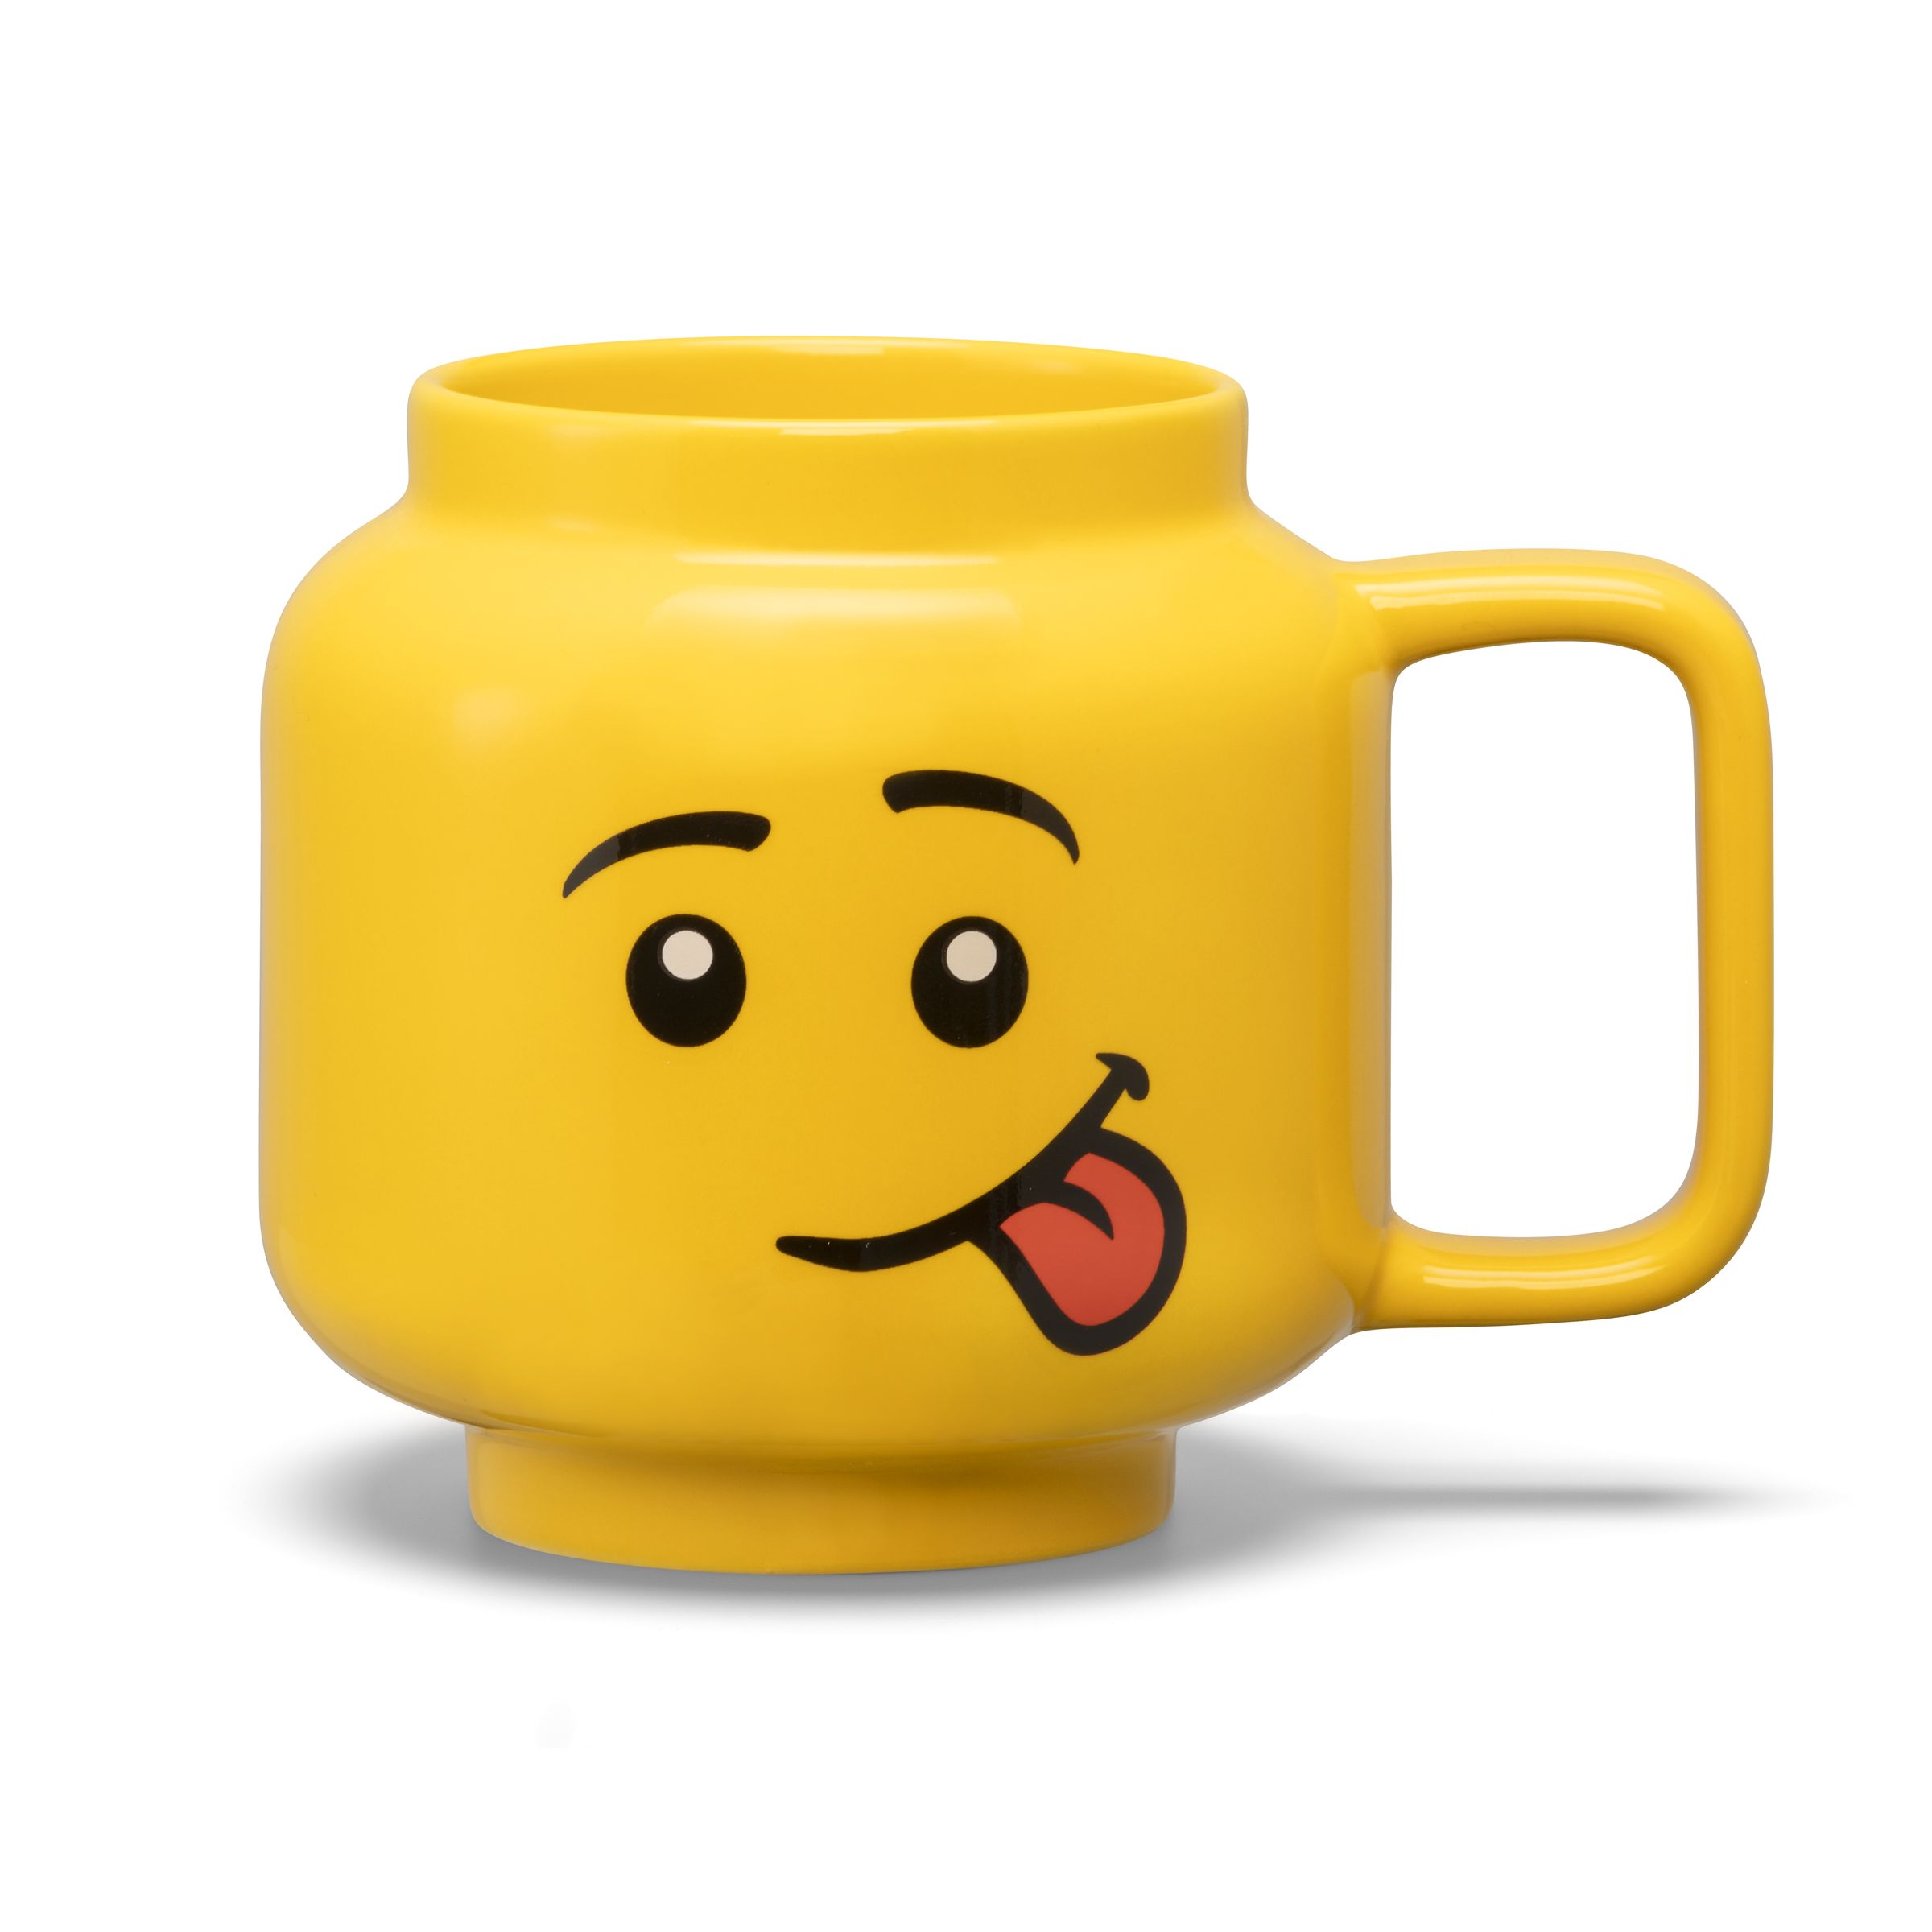 LEGO Gear 5007874 Keramikbecher mit albernem Gesicht